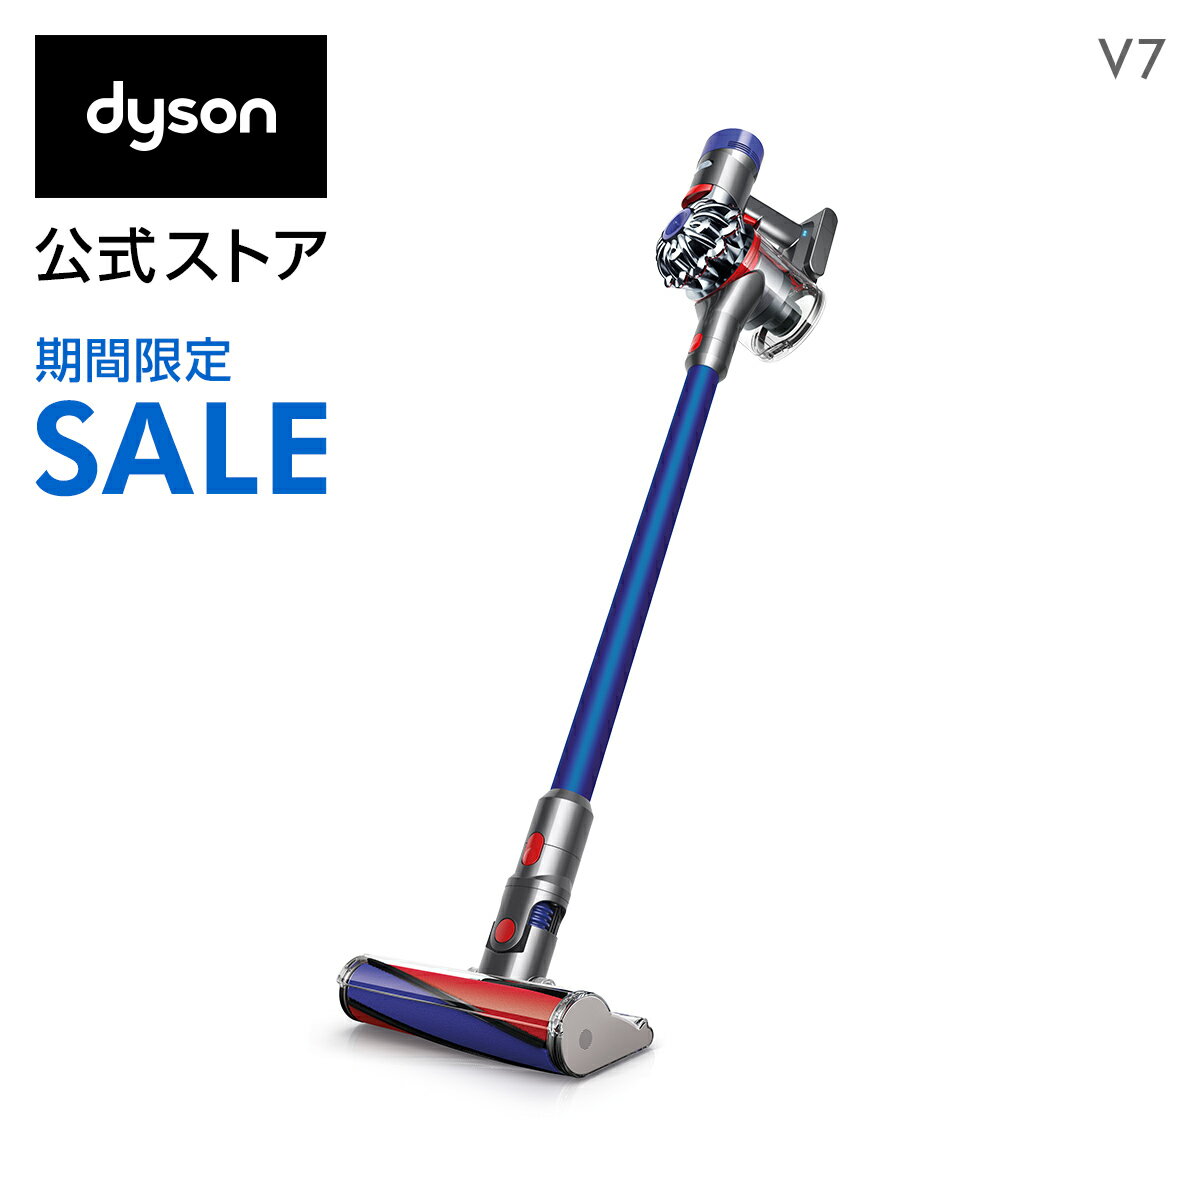 【期間限定】6/4 20:00-6/11 01:59まで！ダイソン Dyson V7 サイクロン式 コードレス掃除機 dyson SV11FFOLB 2018年モデル